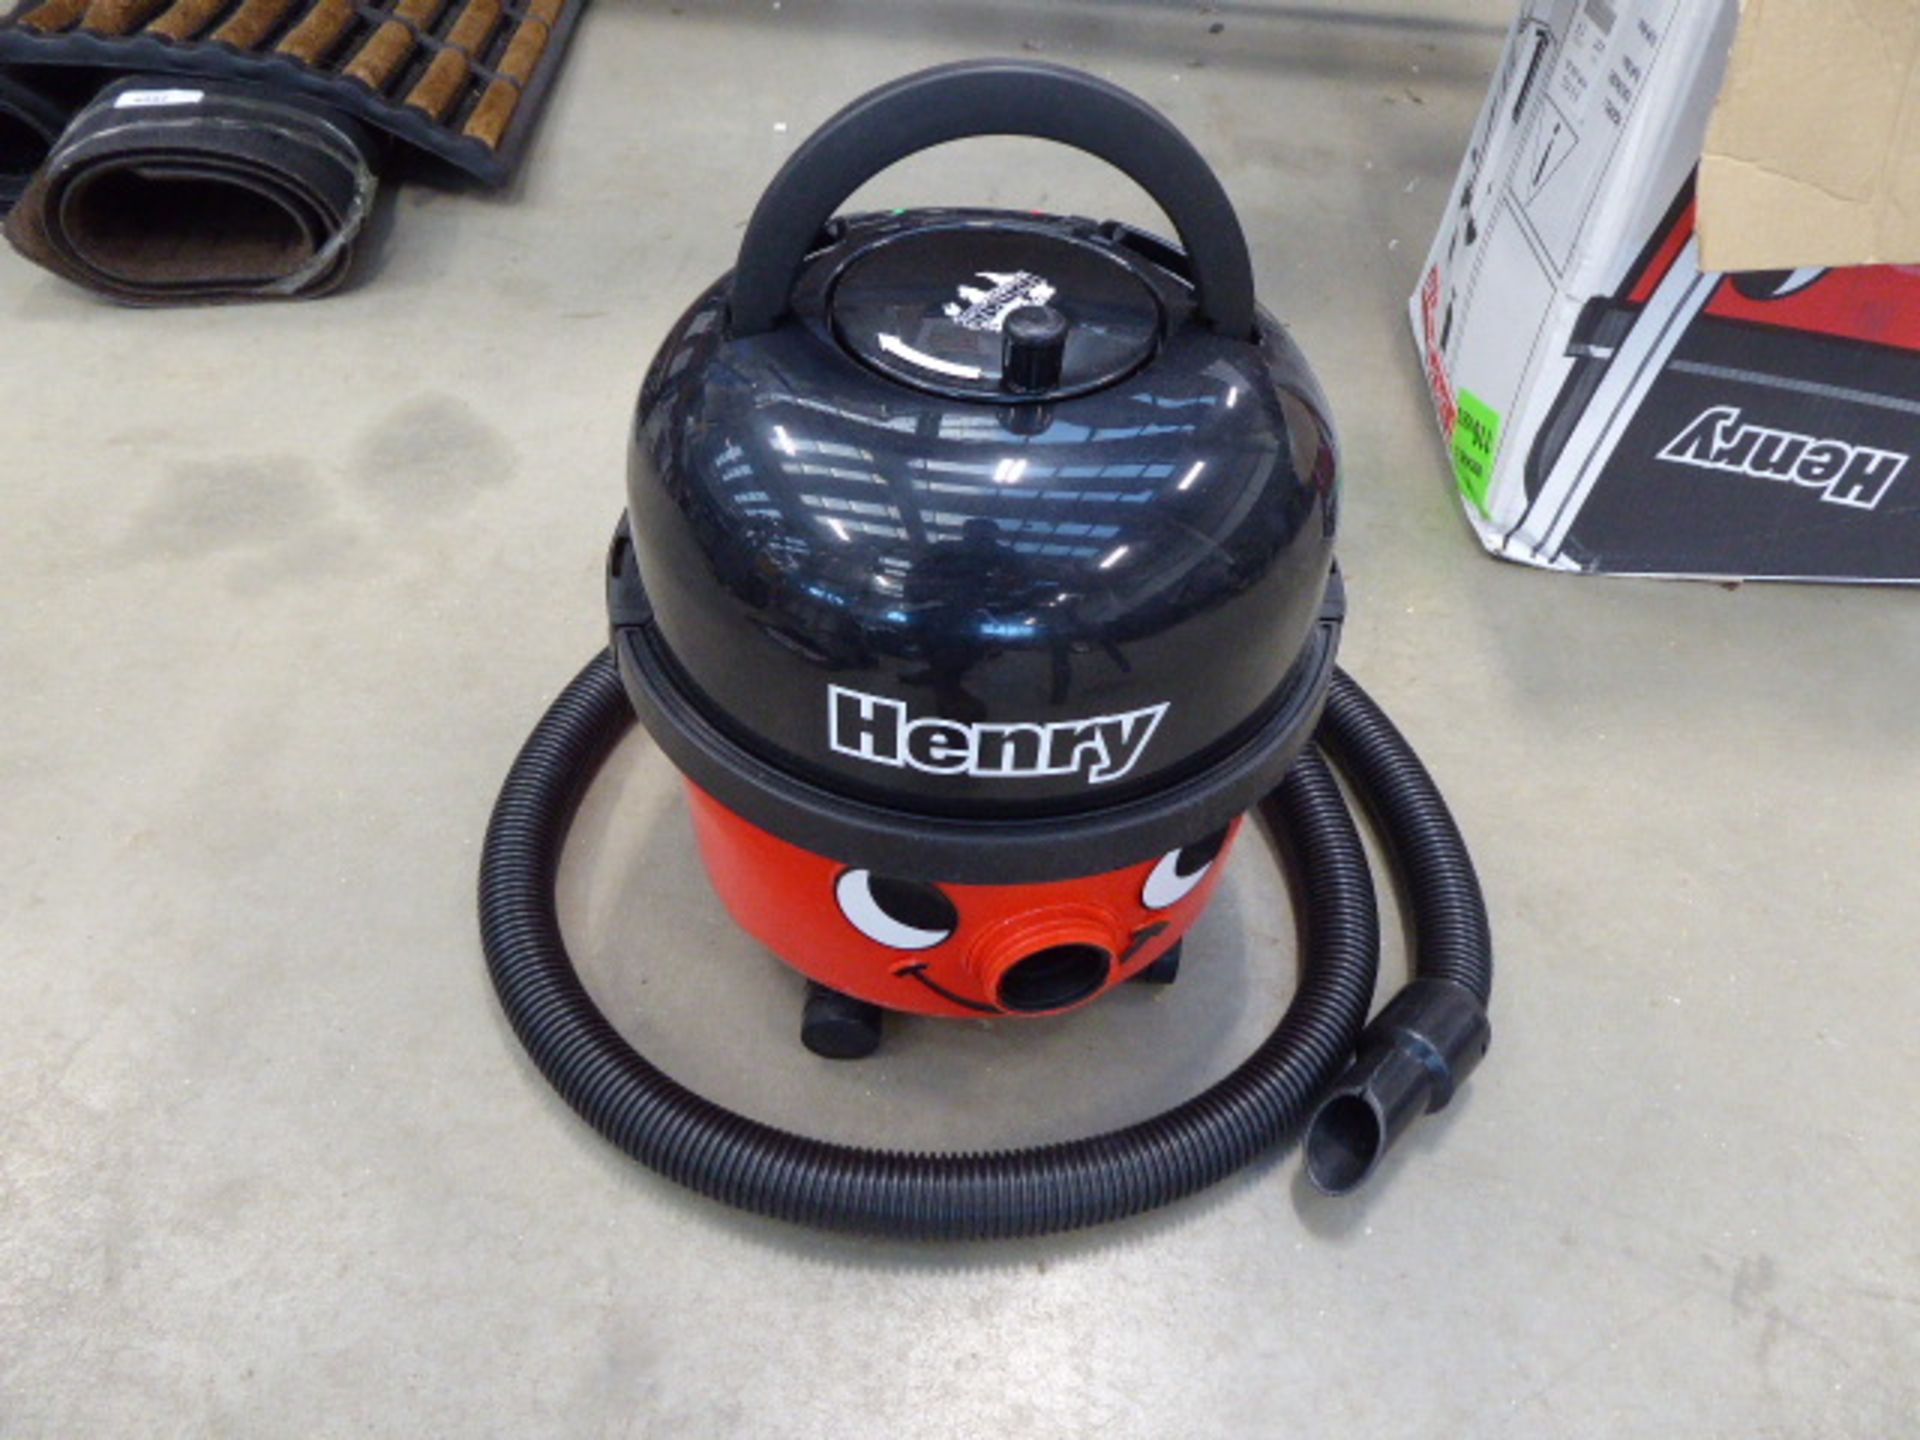 110v Henry vacuum cleaner